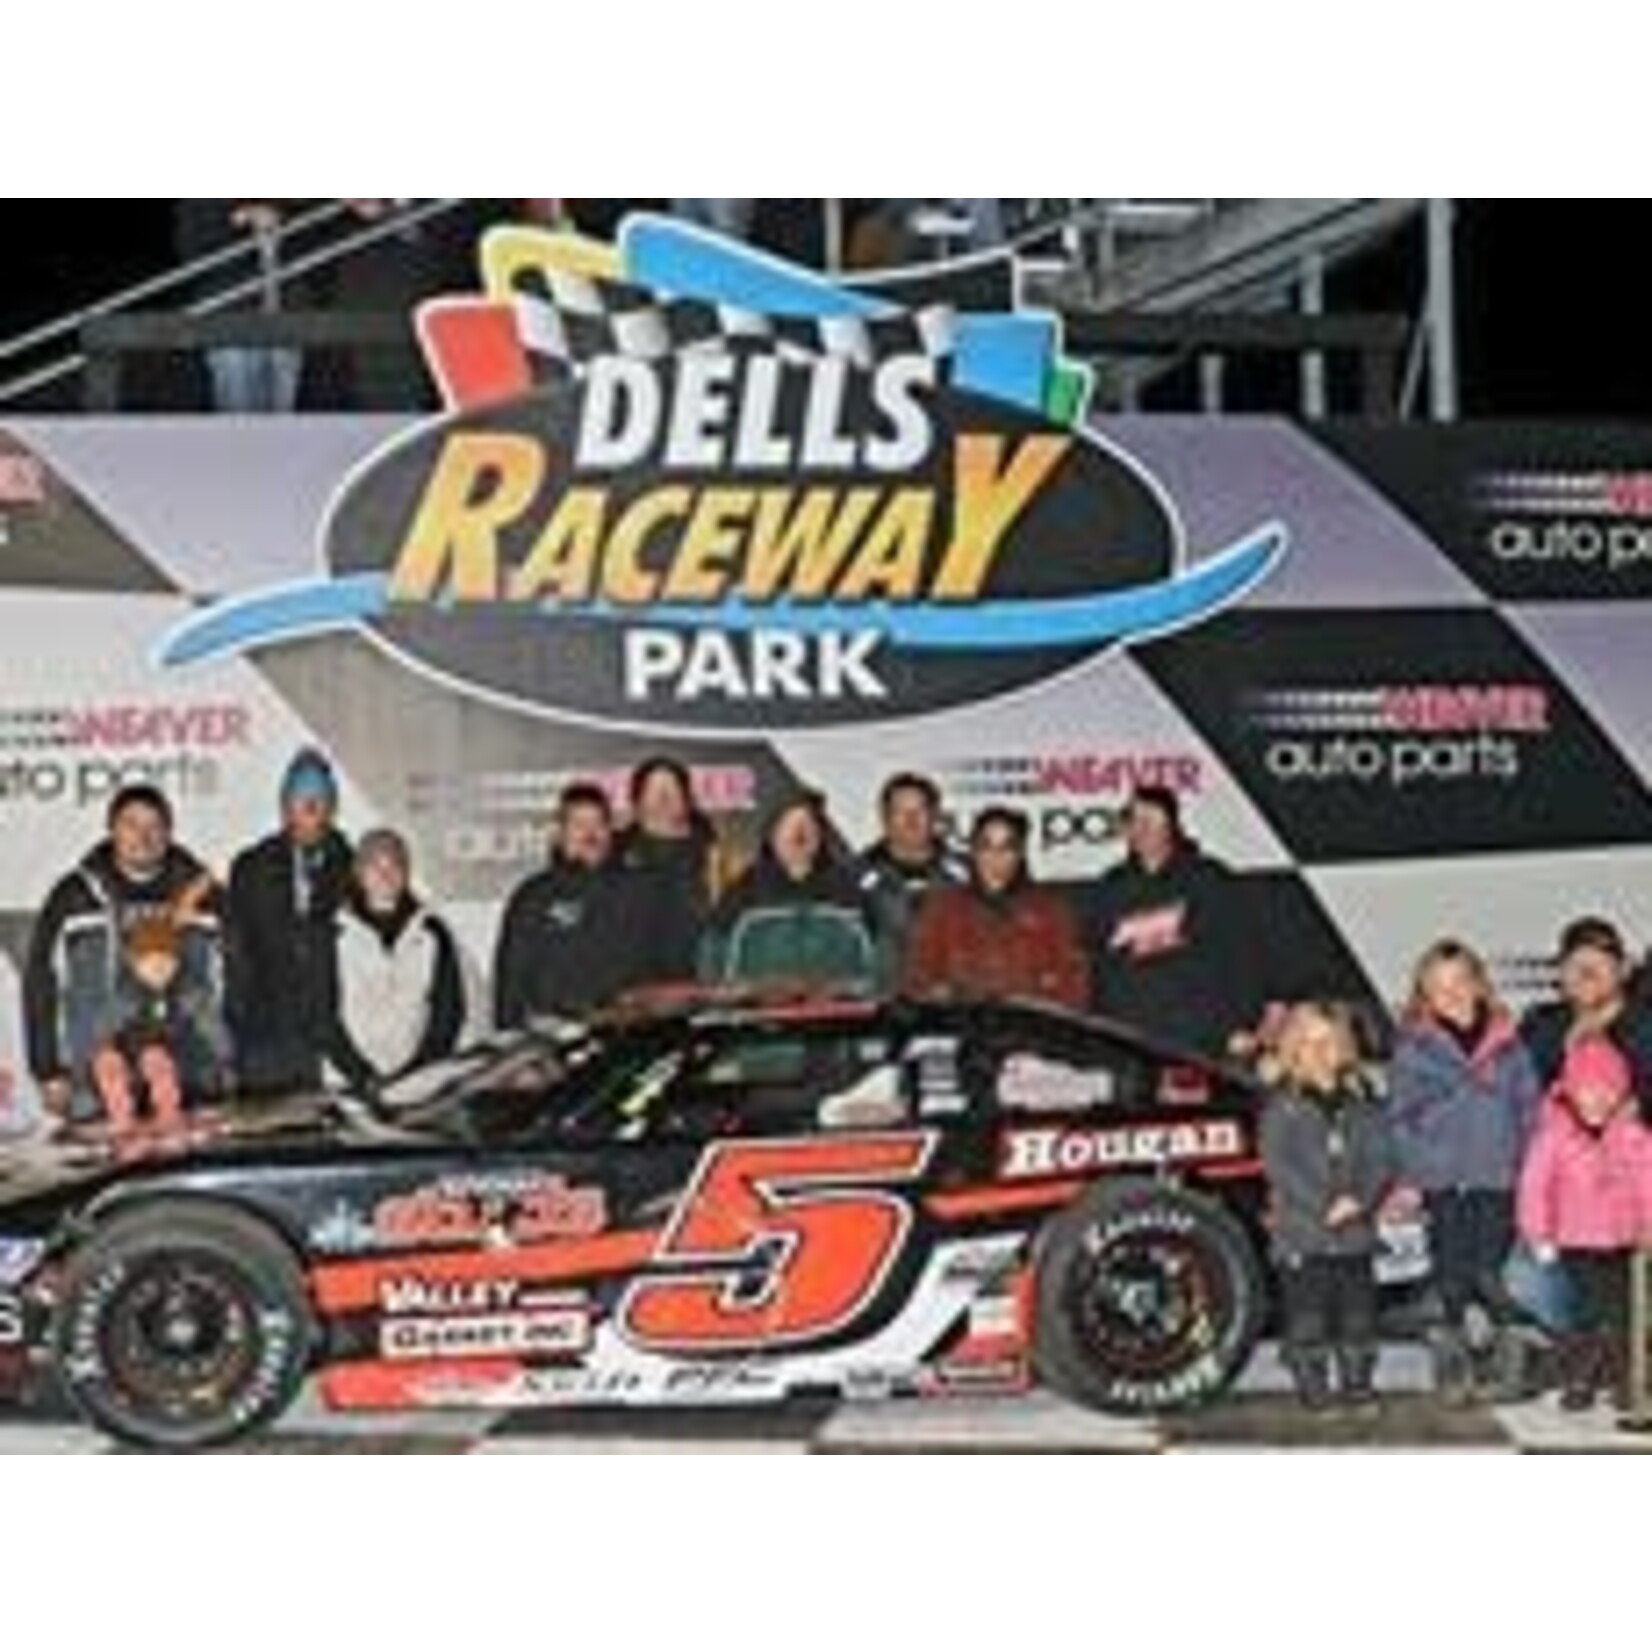 Dells Raceway Park-Wisconsin Dells Dells Raceway Park-Wisconsin Dells $15.00 Single  General Admission-